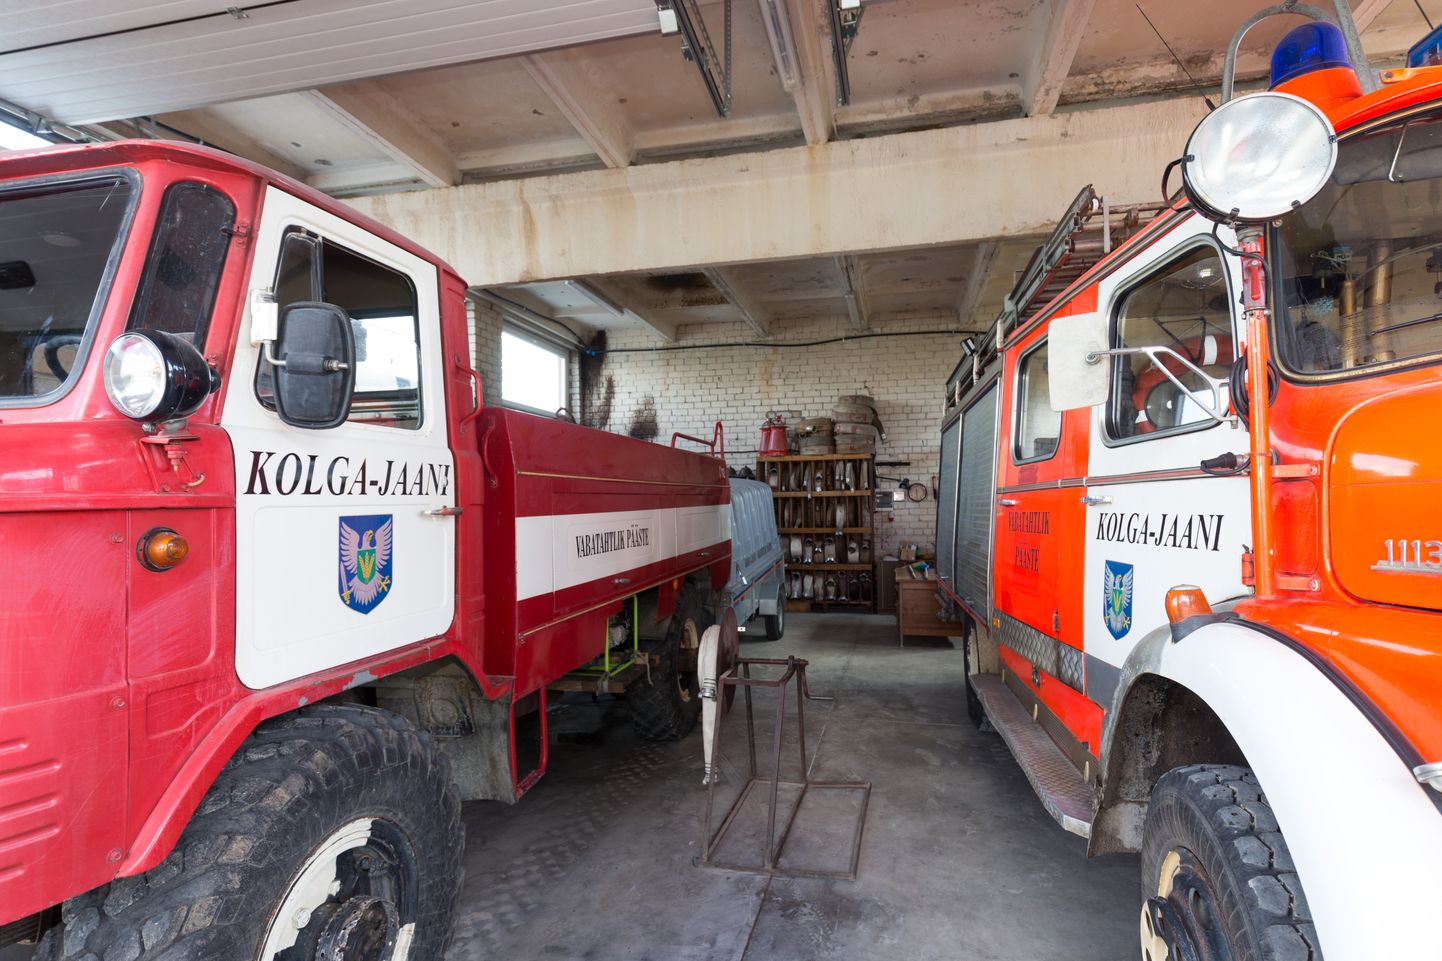 Põllumajandusettevõte toetab priitahtlikke pritsimehi. Pildil on Kolga-Jaani komando päästeautod.